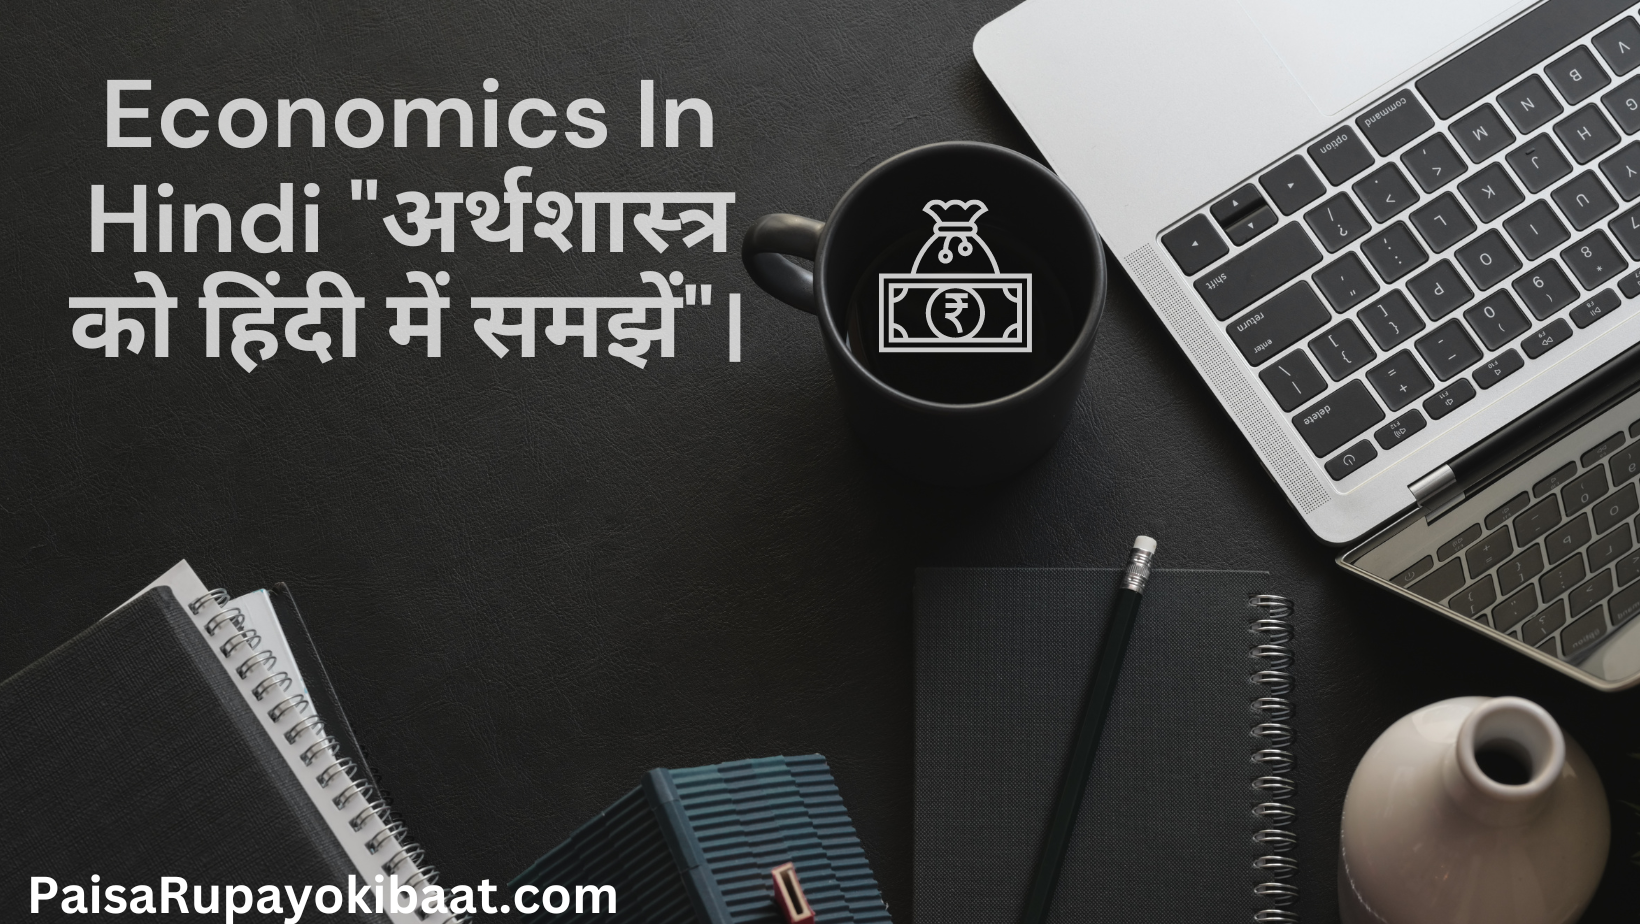 Economics In Hindi "अर्थशास्त्र को हिंदी में समझें"।